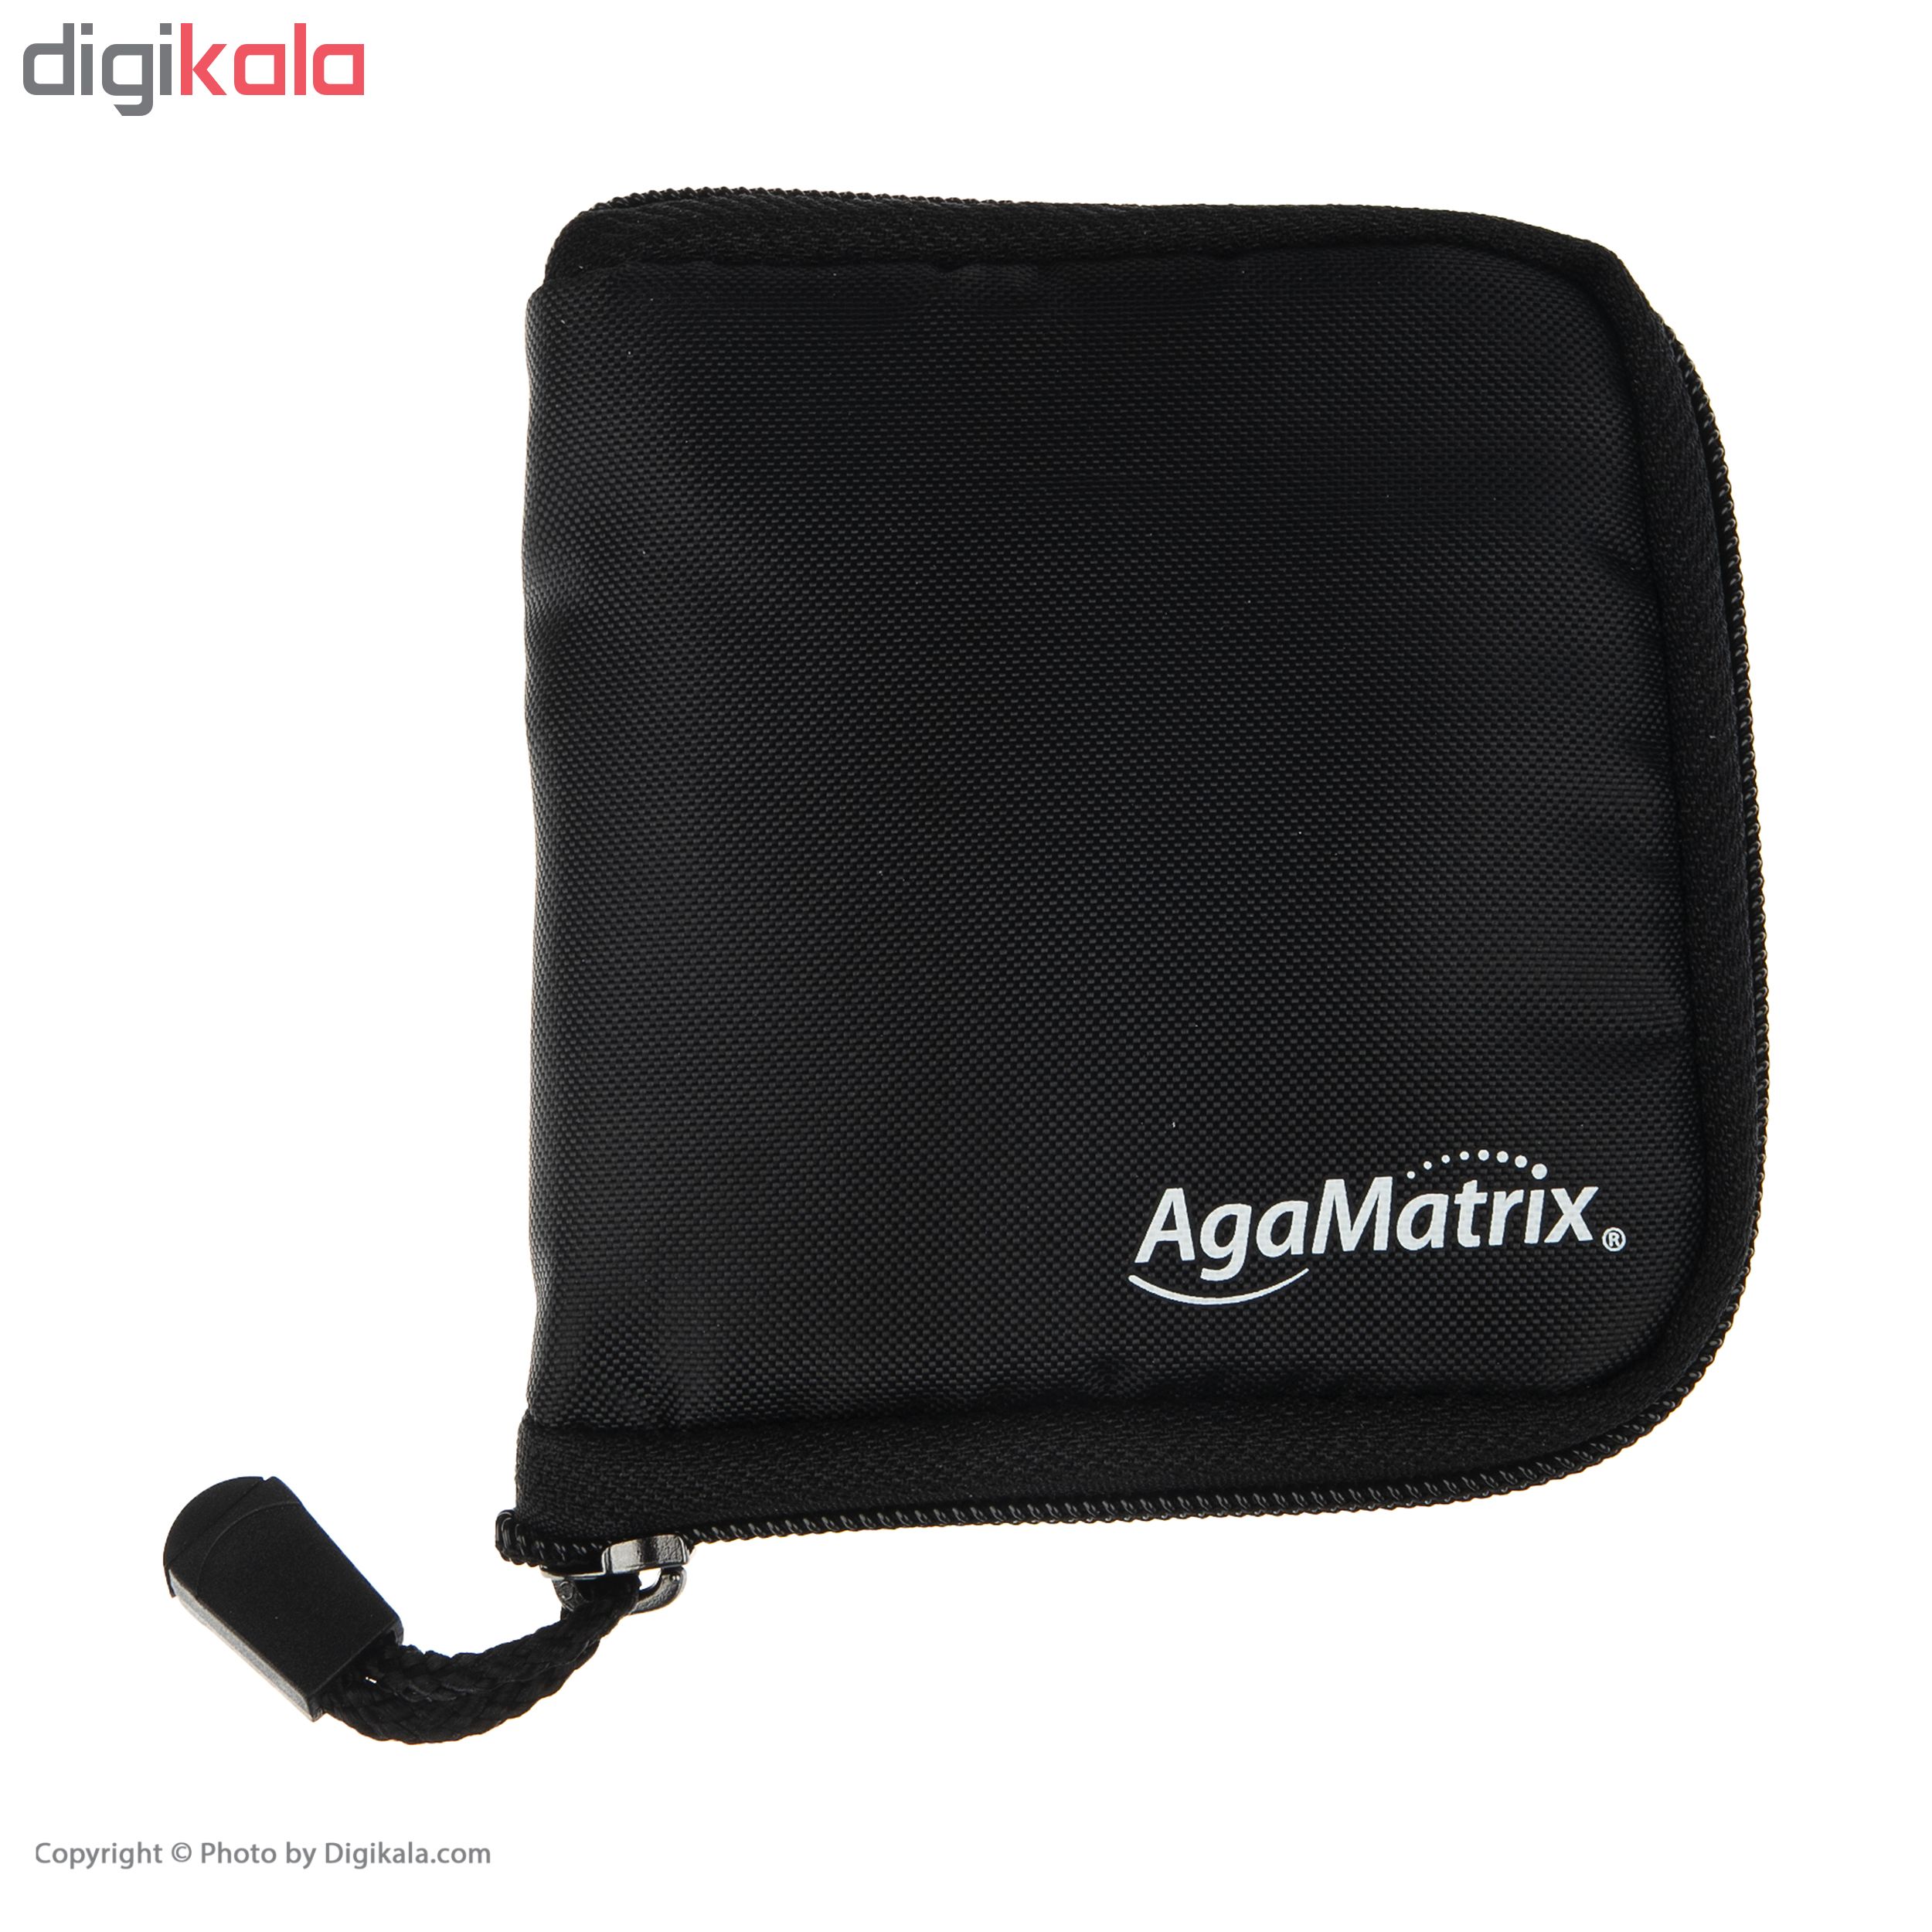 دستگاه تست قند خون آگاماتریکس مدل AgaMatrix Jazz Wireless 2 به همراه نوار تست قند خون بسته 50 عددی